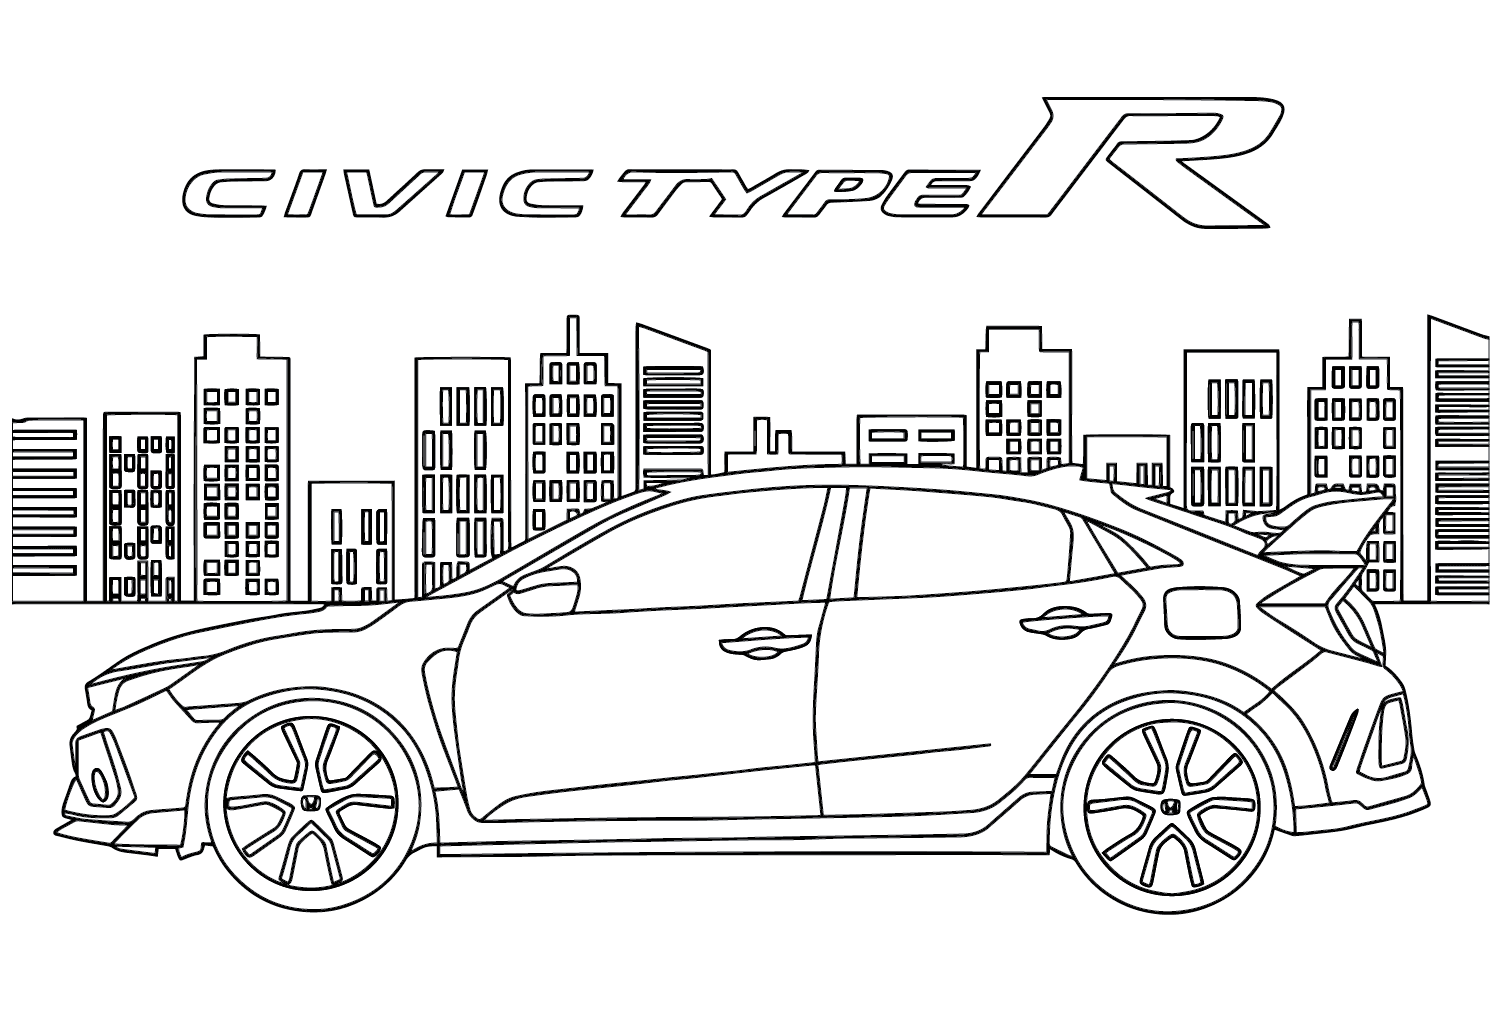 Honda Civic Изображение для раскрашивания от Honda